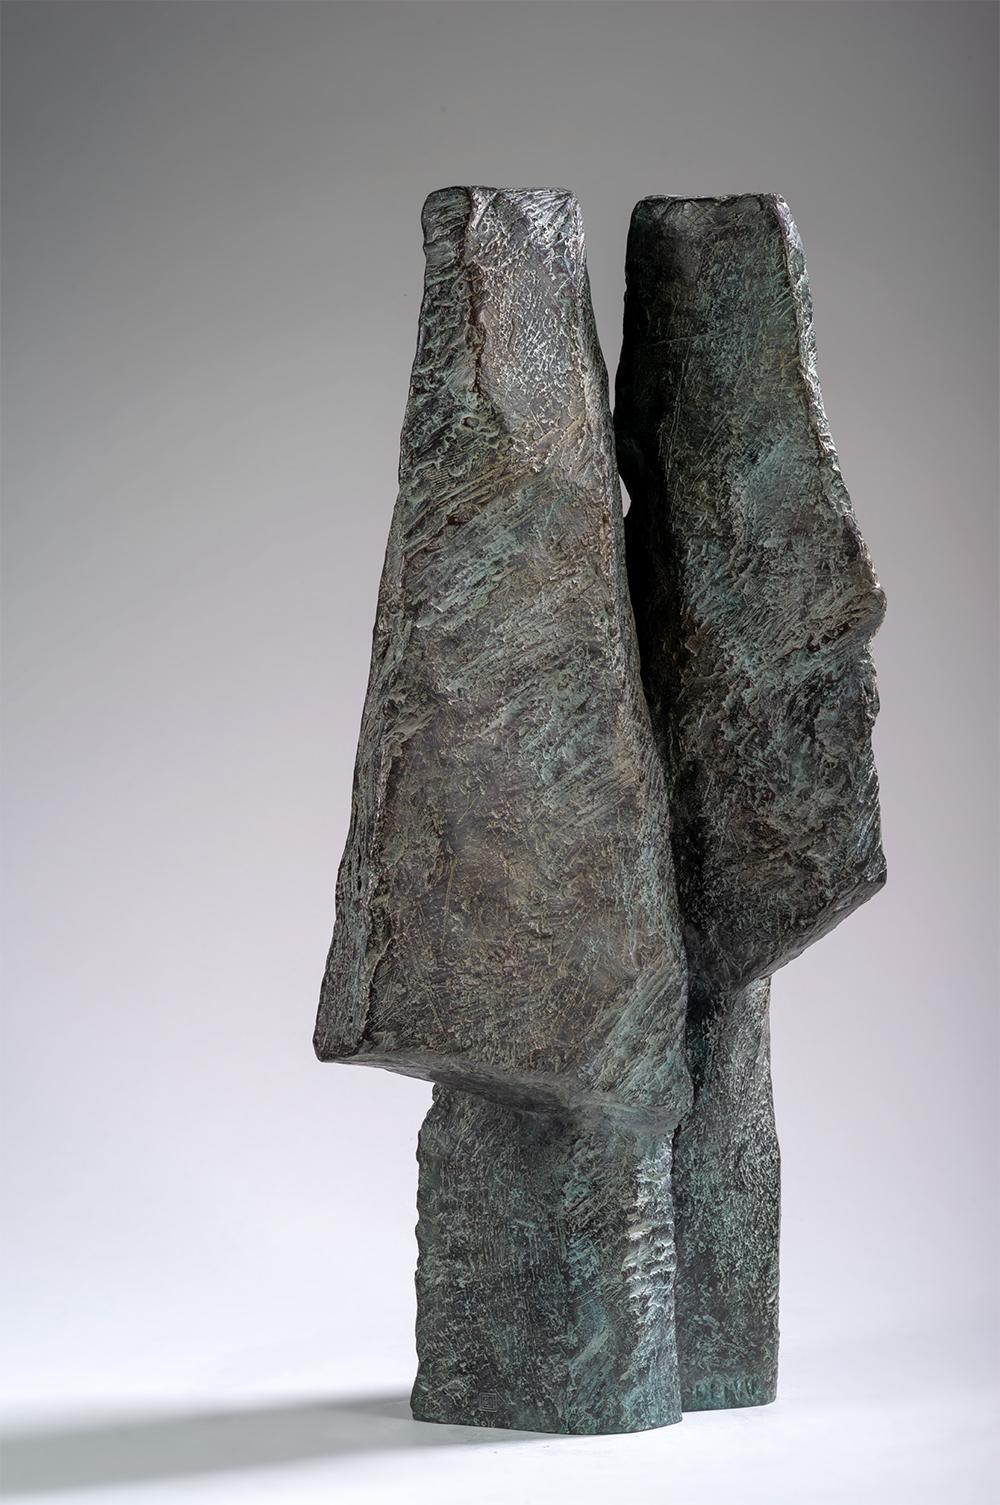 Janus Heads est une sculpture en bronze de l'artiste contemporaine française Martine Demal, dont les dimensions sont 54 × 26 × 17 cm (21,3 × 10,2 × 6,7 in). 
La sculpture est signée et numérotée, elle fait partie d'une édition limitée à 8